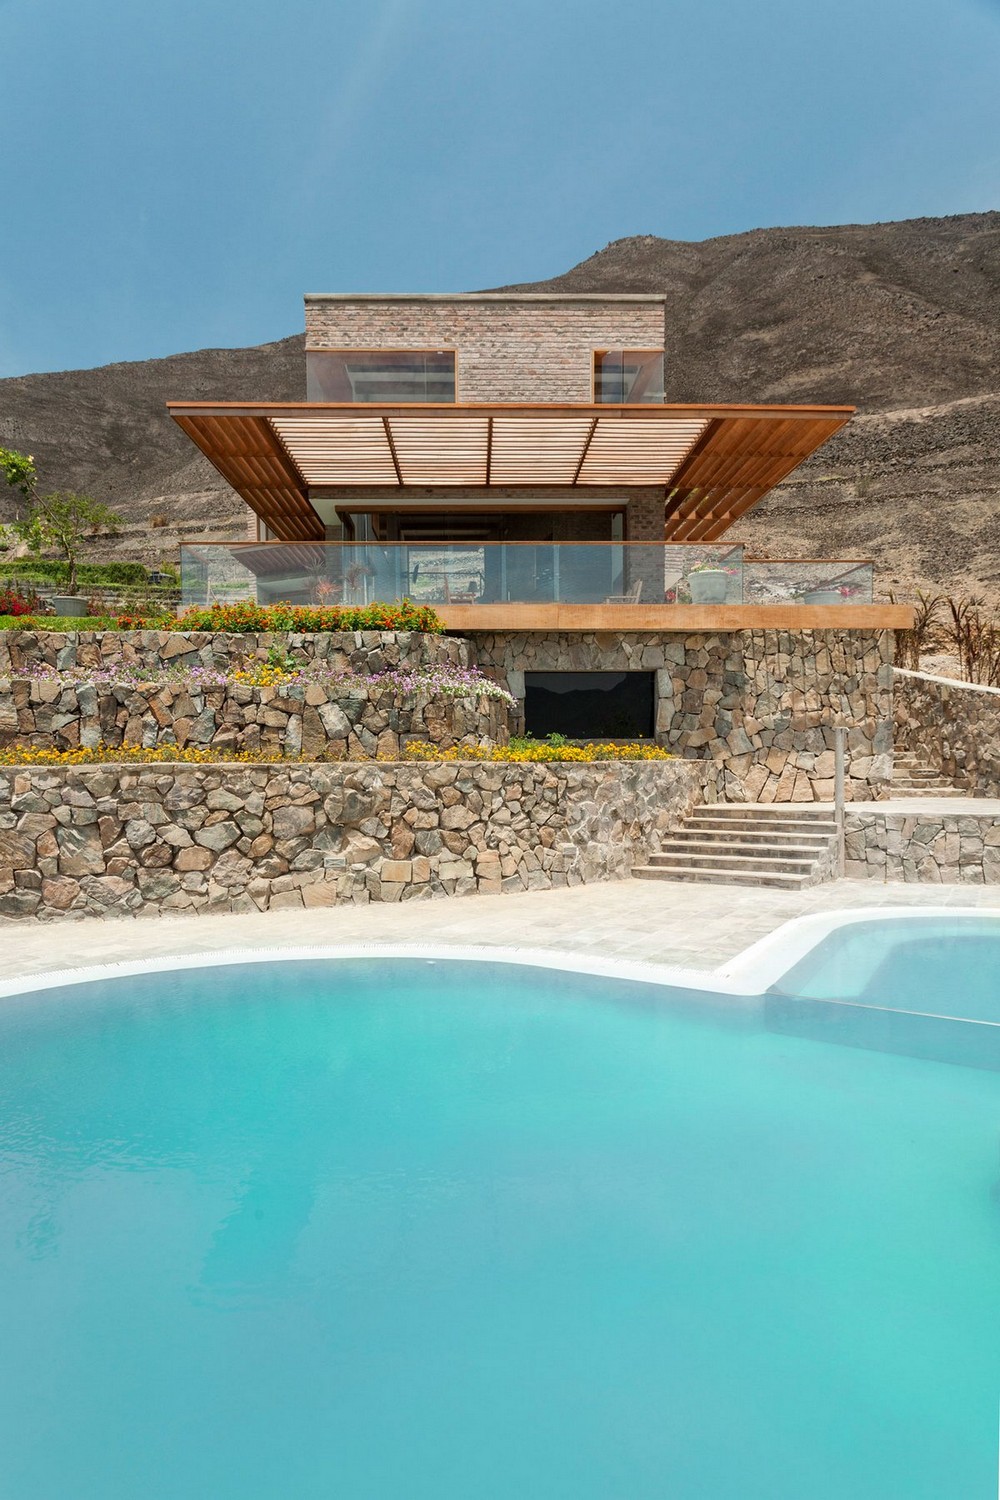 Частная резиденция в Перу с видом на долину